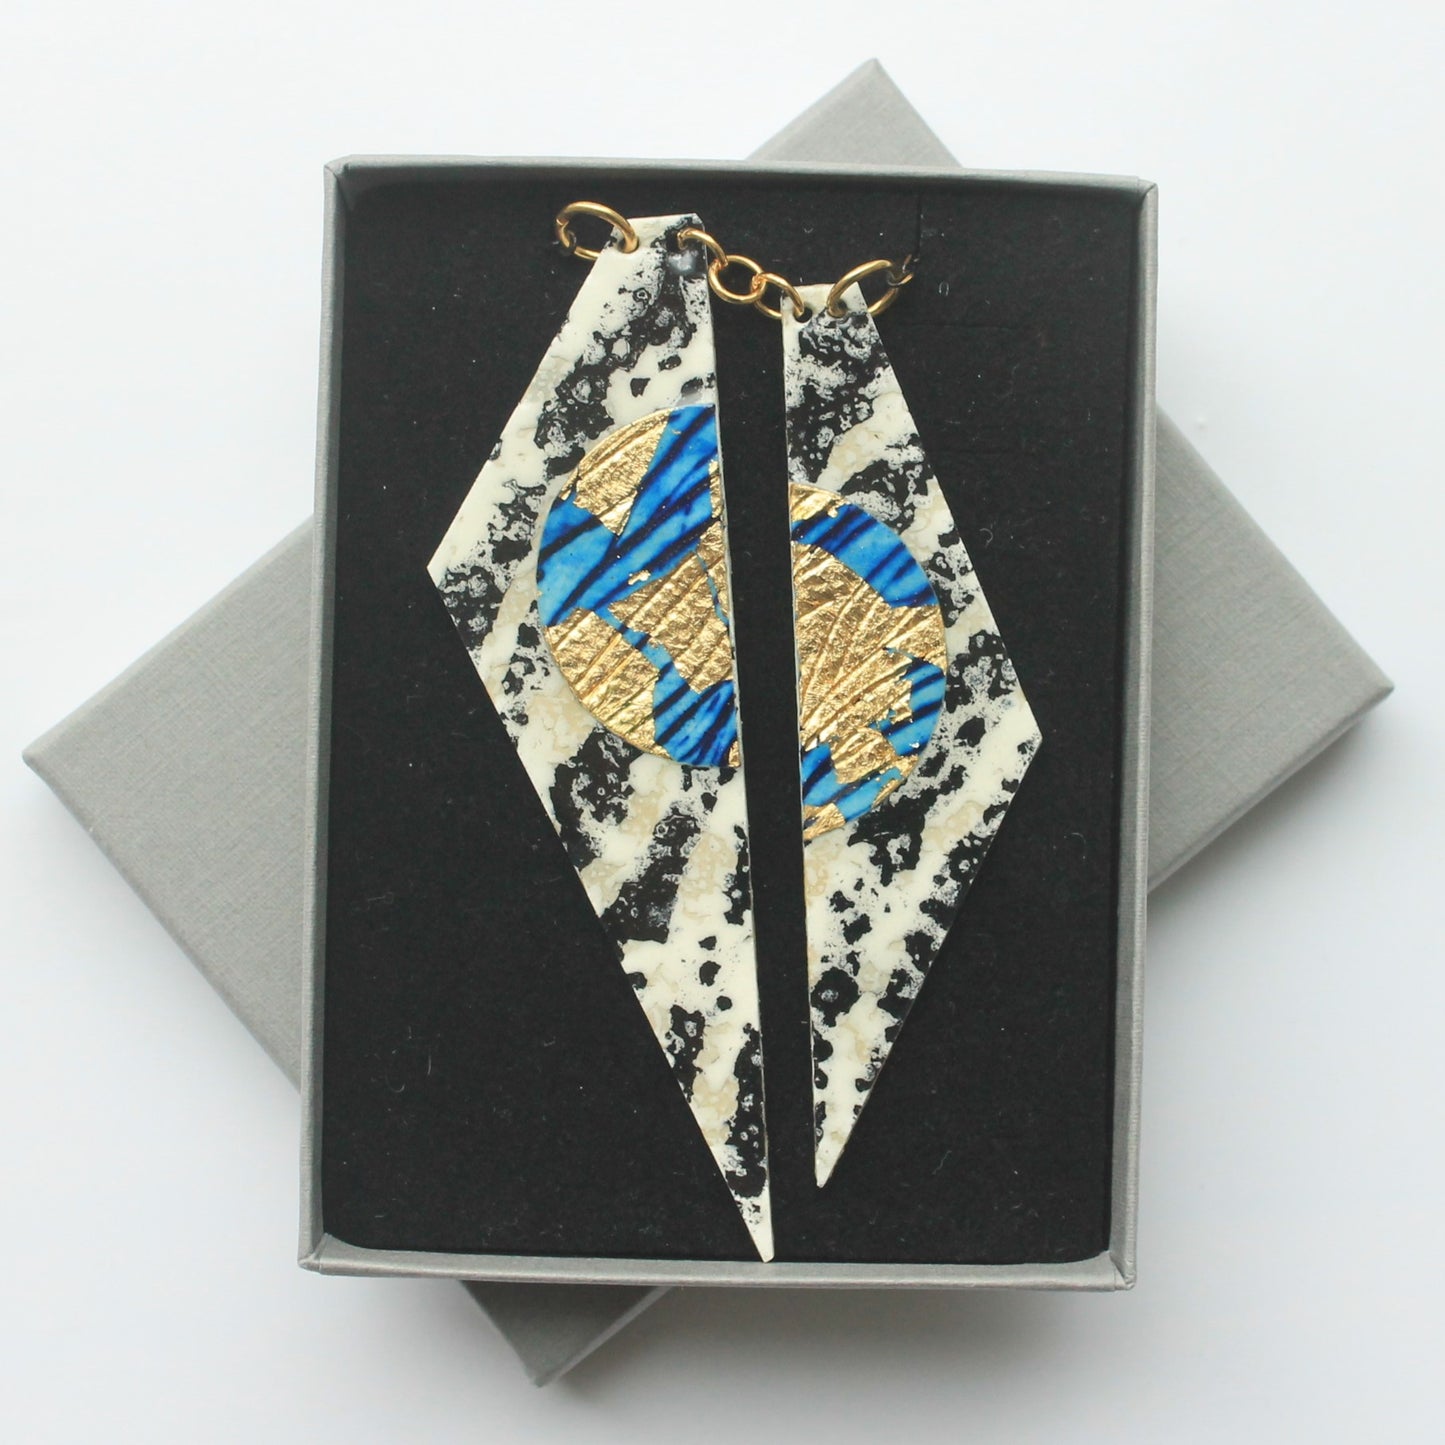 Zazu batik textile necklace in charcoal/blue/gold - Rothlu